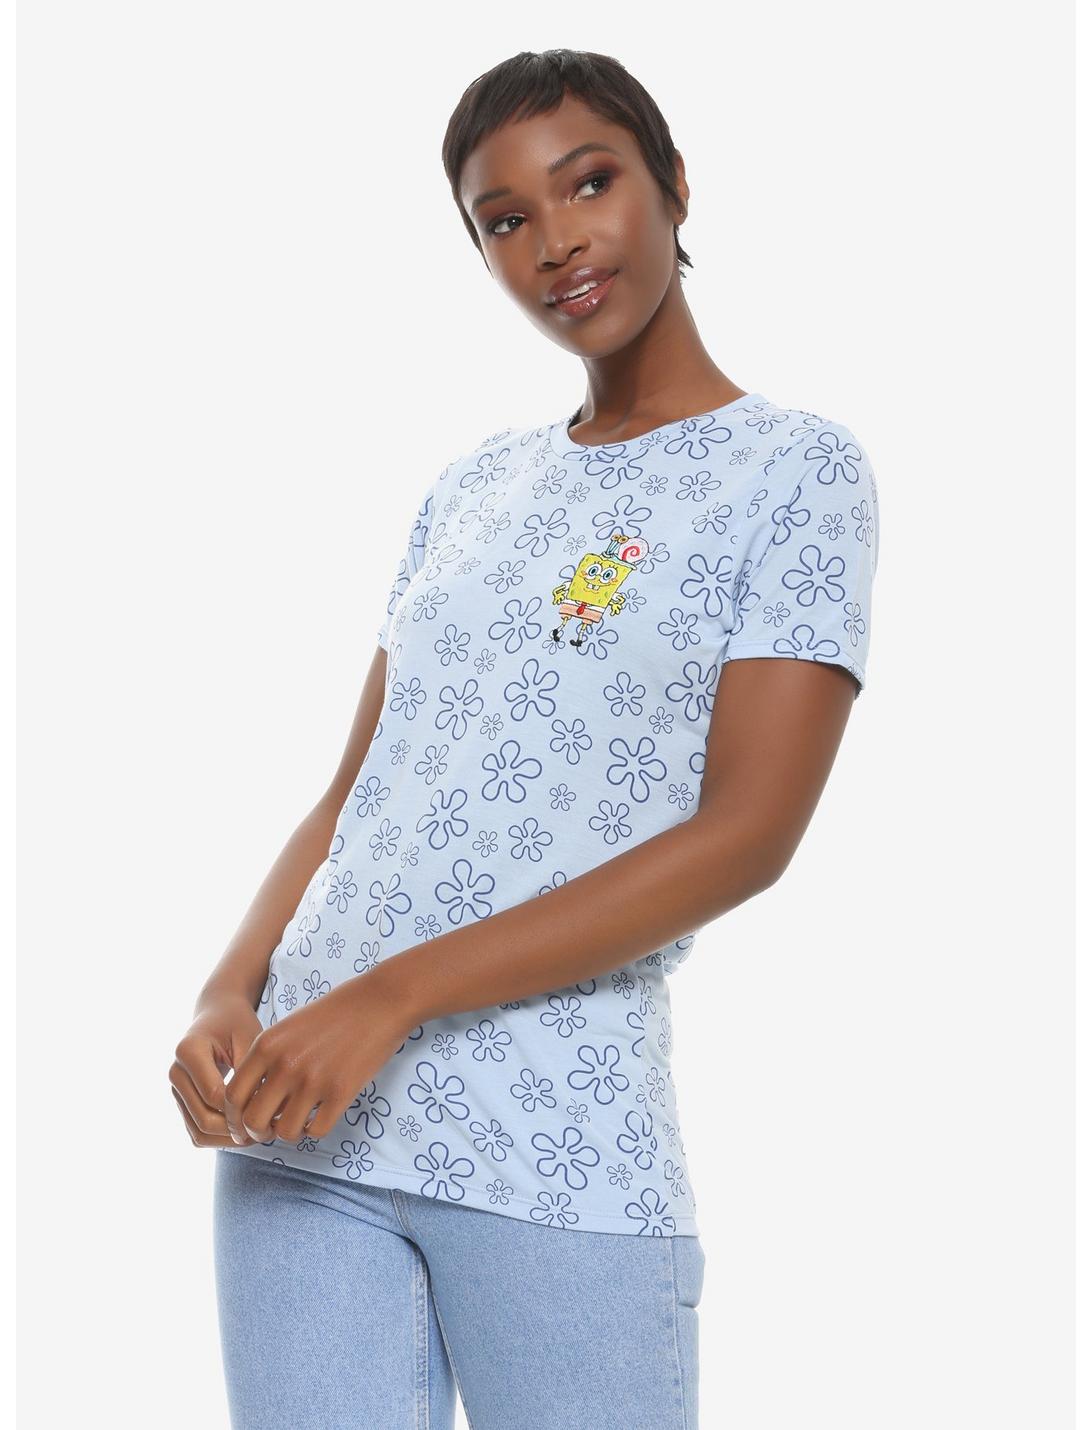 SpongeBob SquarePants Flower Clouds Women's T-Shirt - BoxLunch Exclusive, BLUE, hi-res